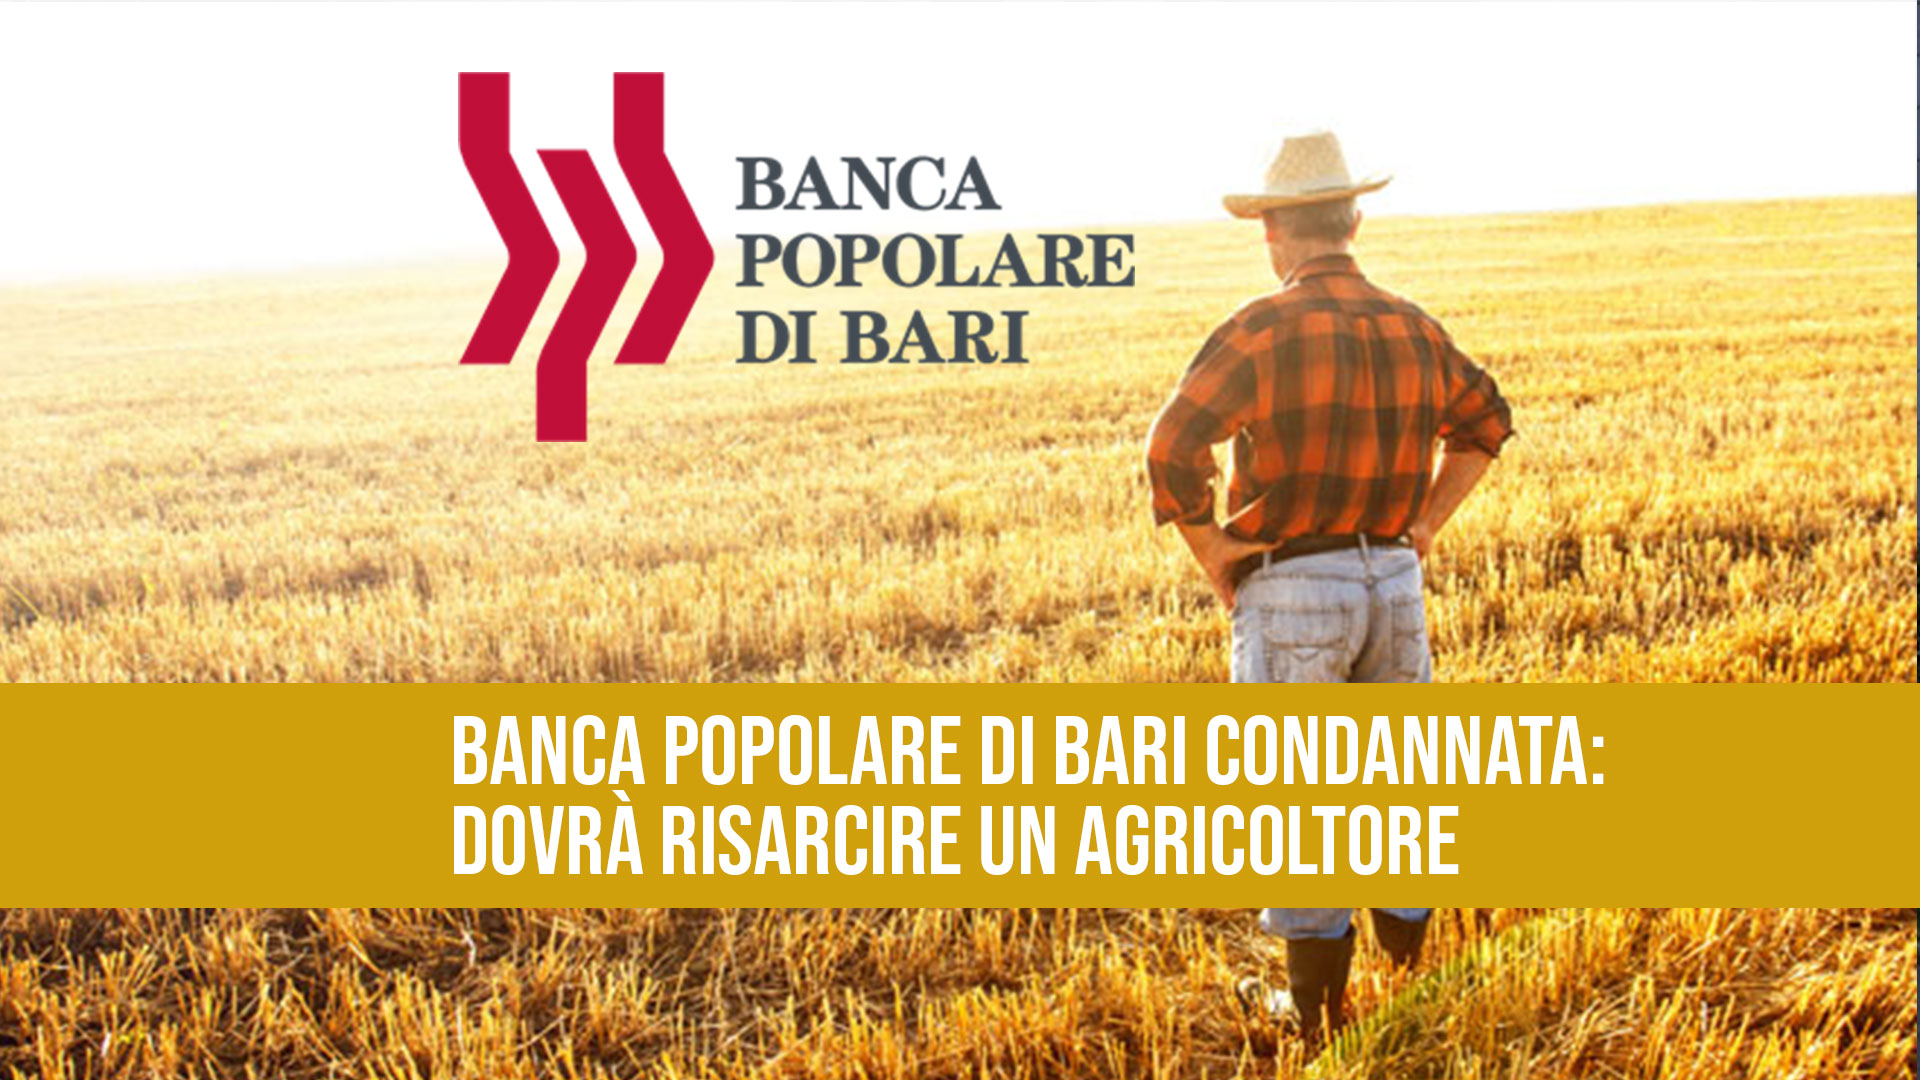 Banca Popolare di Bari, ancora una condanna: dovrà risarcire un agricoltore